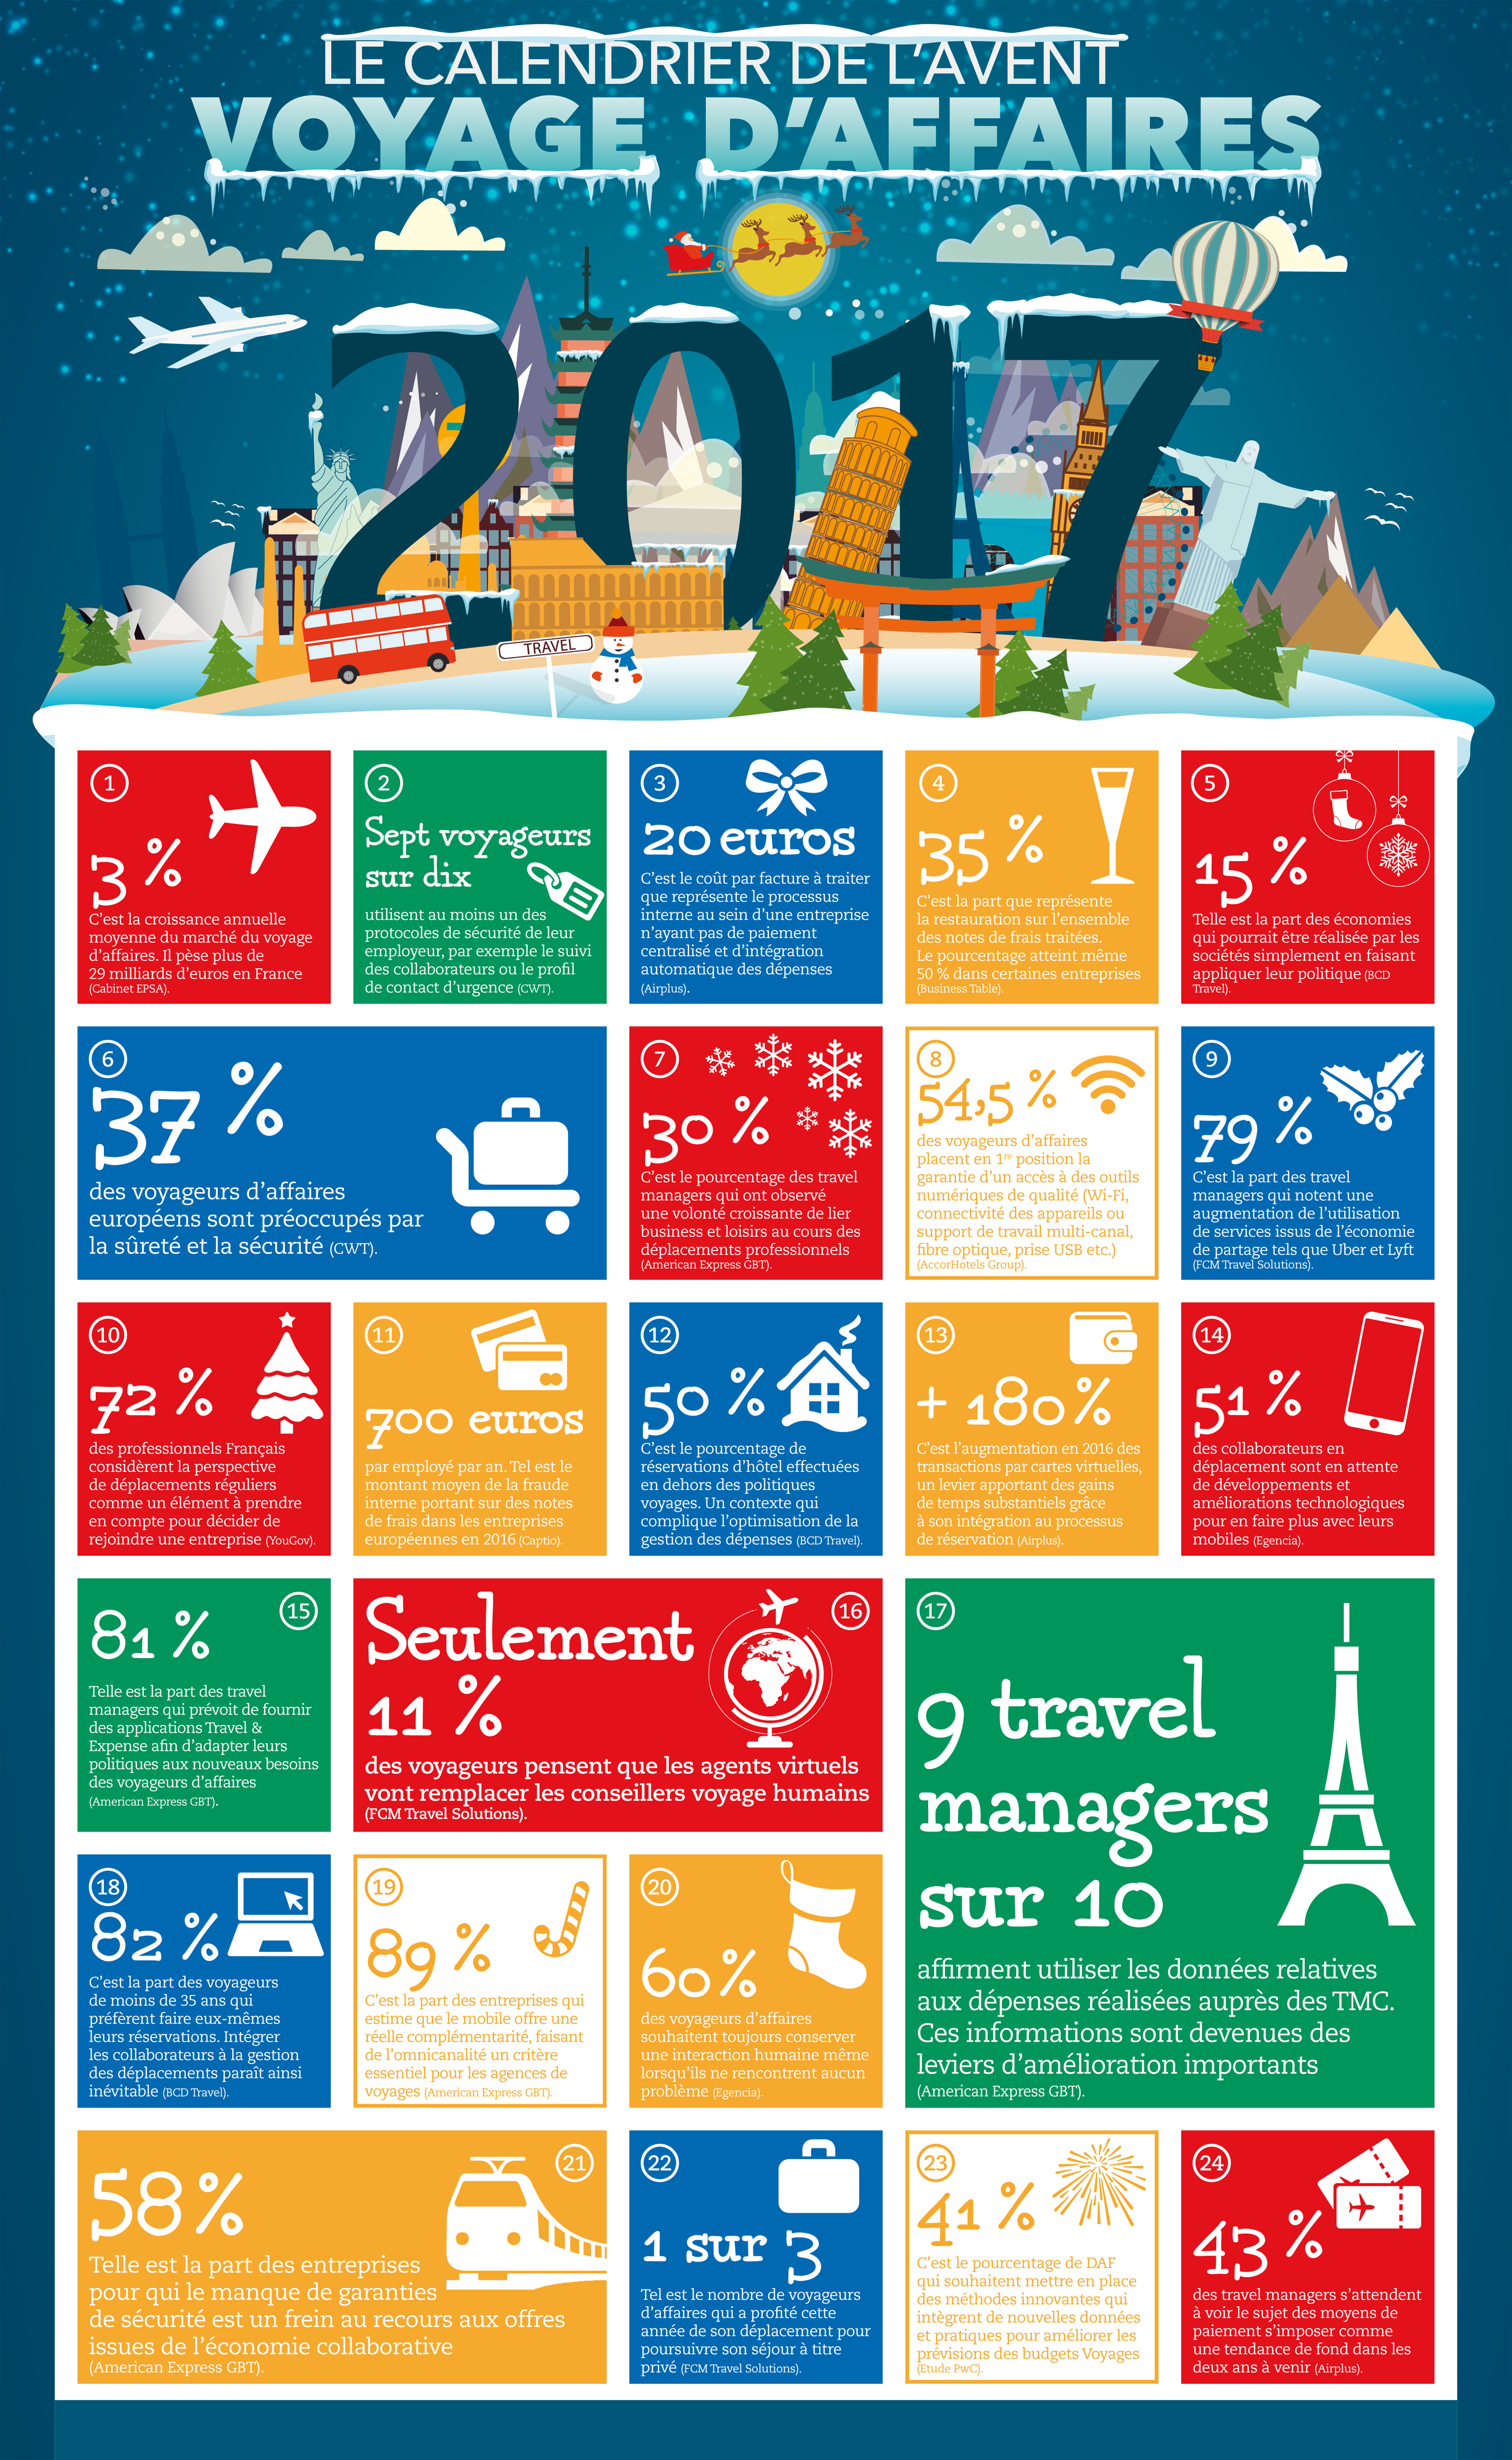 Traveldoo résume le voyage d'affaires 2017 en 24 chiffres